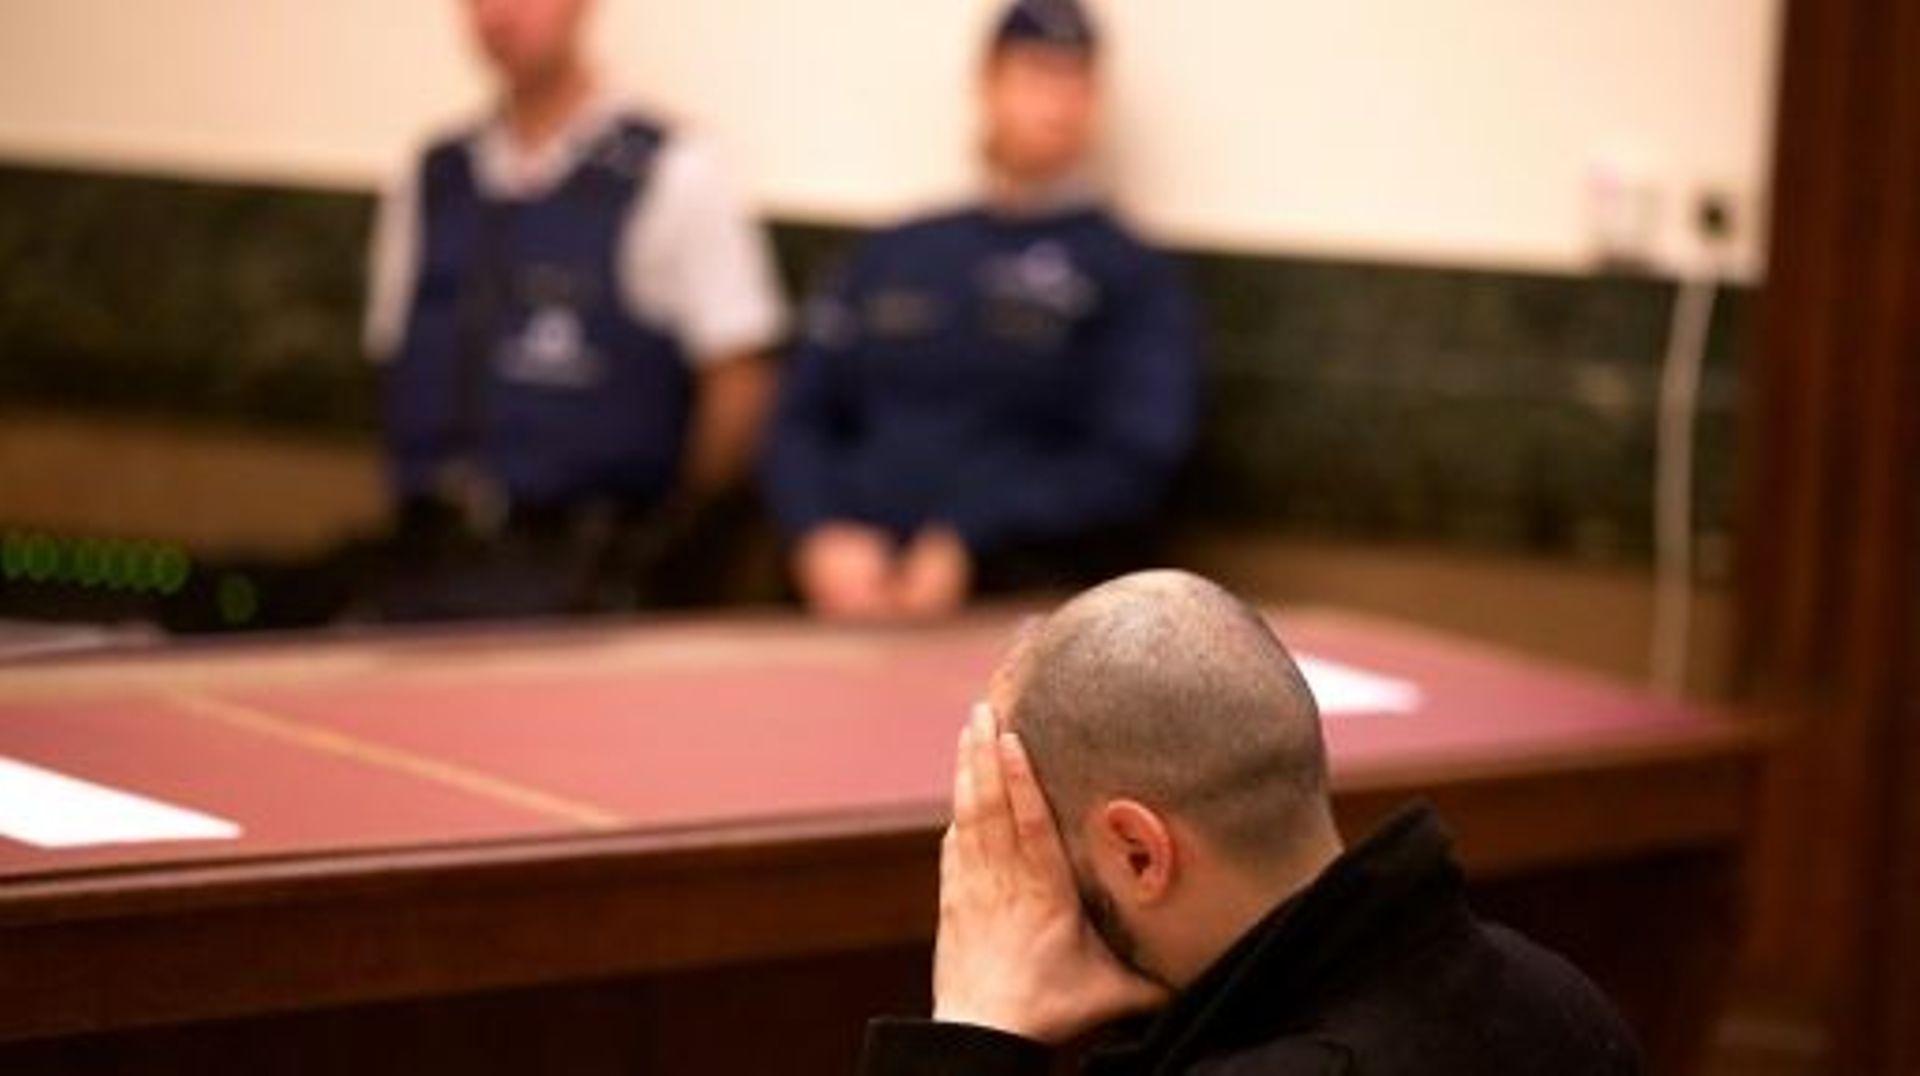 Un des membres de la cellule jihadiste démantelée de Verviers, lors de son procès à Bruxelles le 15 avril 2016